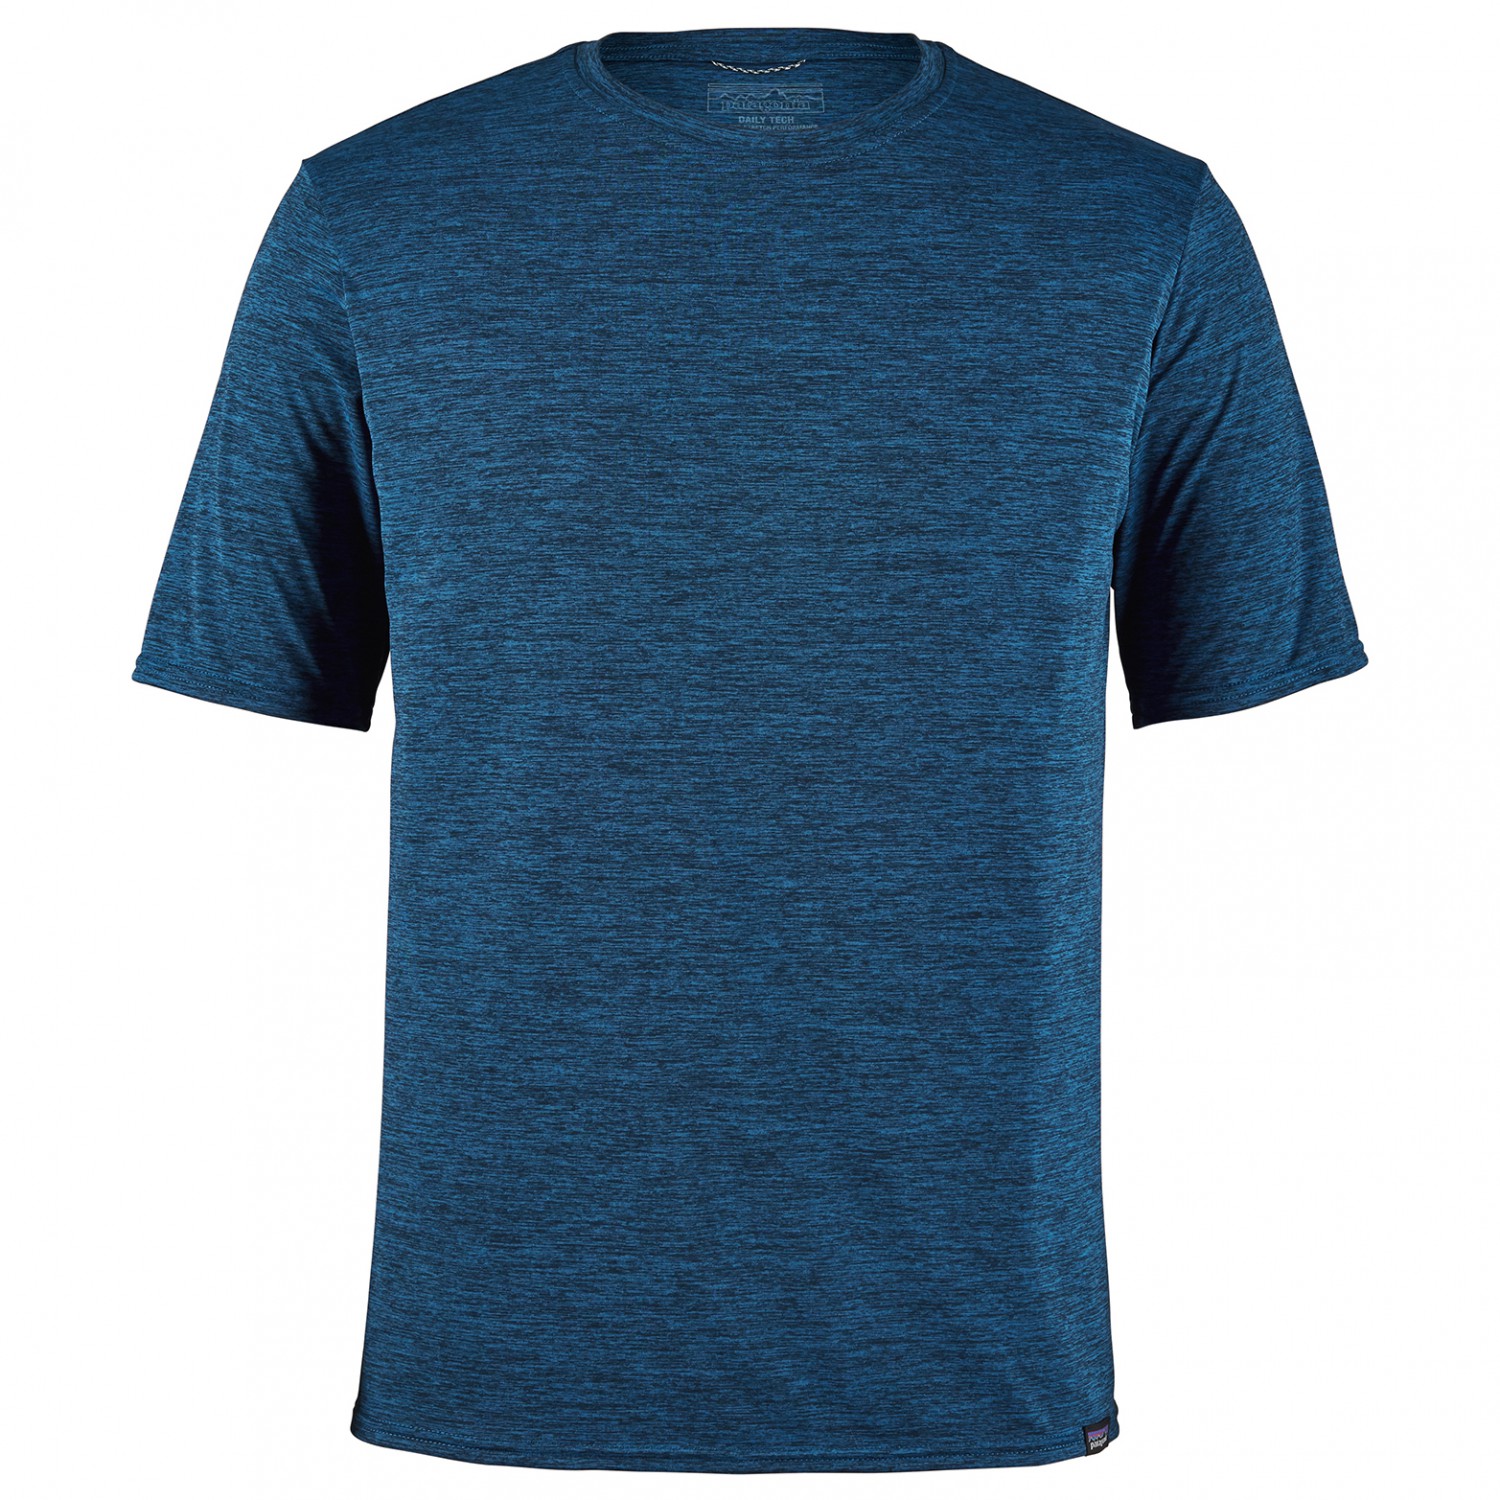 Функциональная рубашка Patagonia Cap Cool Daily Shirt, цвет Viking Blue/Navy Blue X Dye capilene cool повседневная рубашка без рукавов patagonia цвет viking blue navy blue x dye